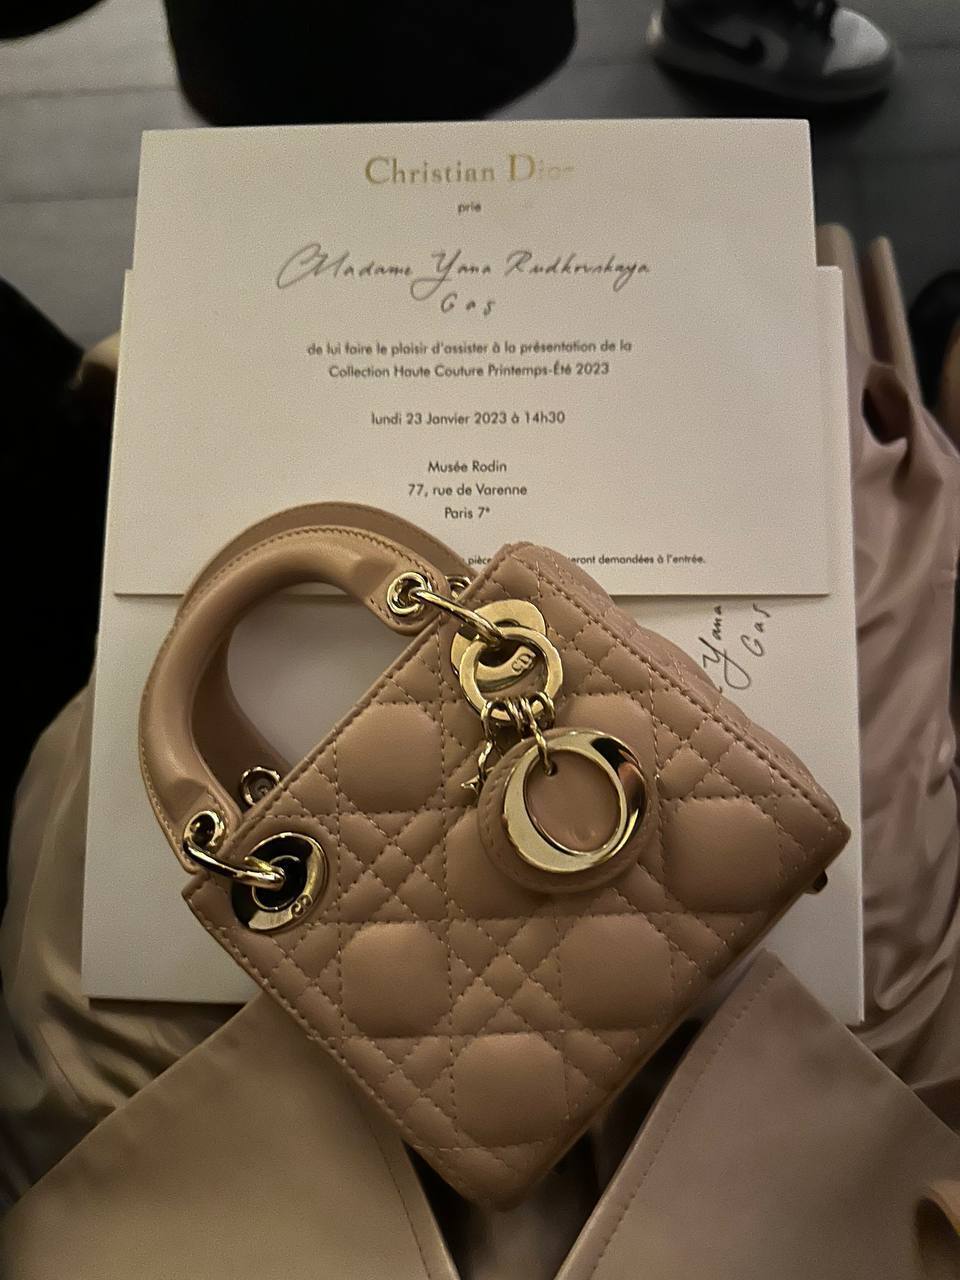 Dior зганьбився, урочисто запросивши на показ російську ведучу Яну Рудковську, яка підтримує війну: їй надіслали подарунки